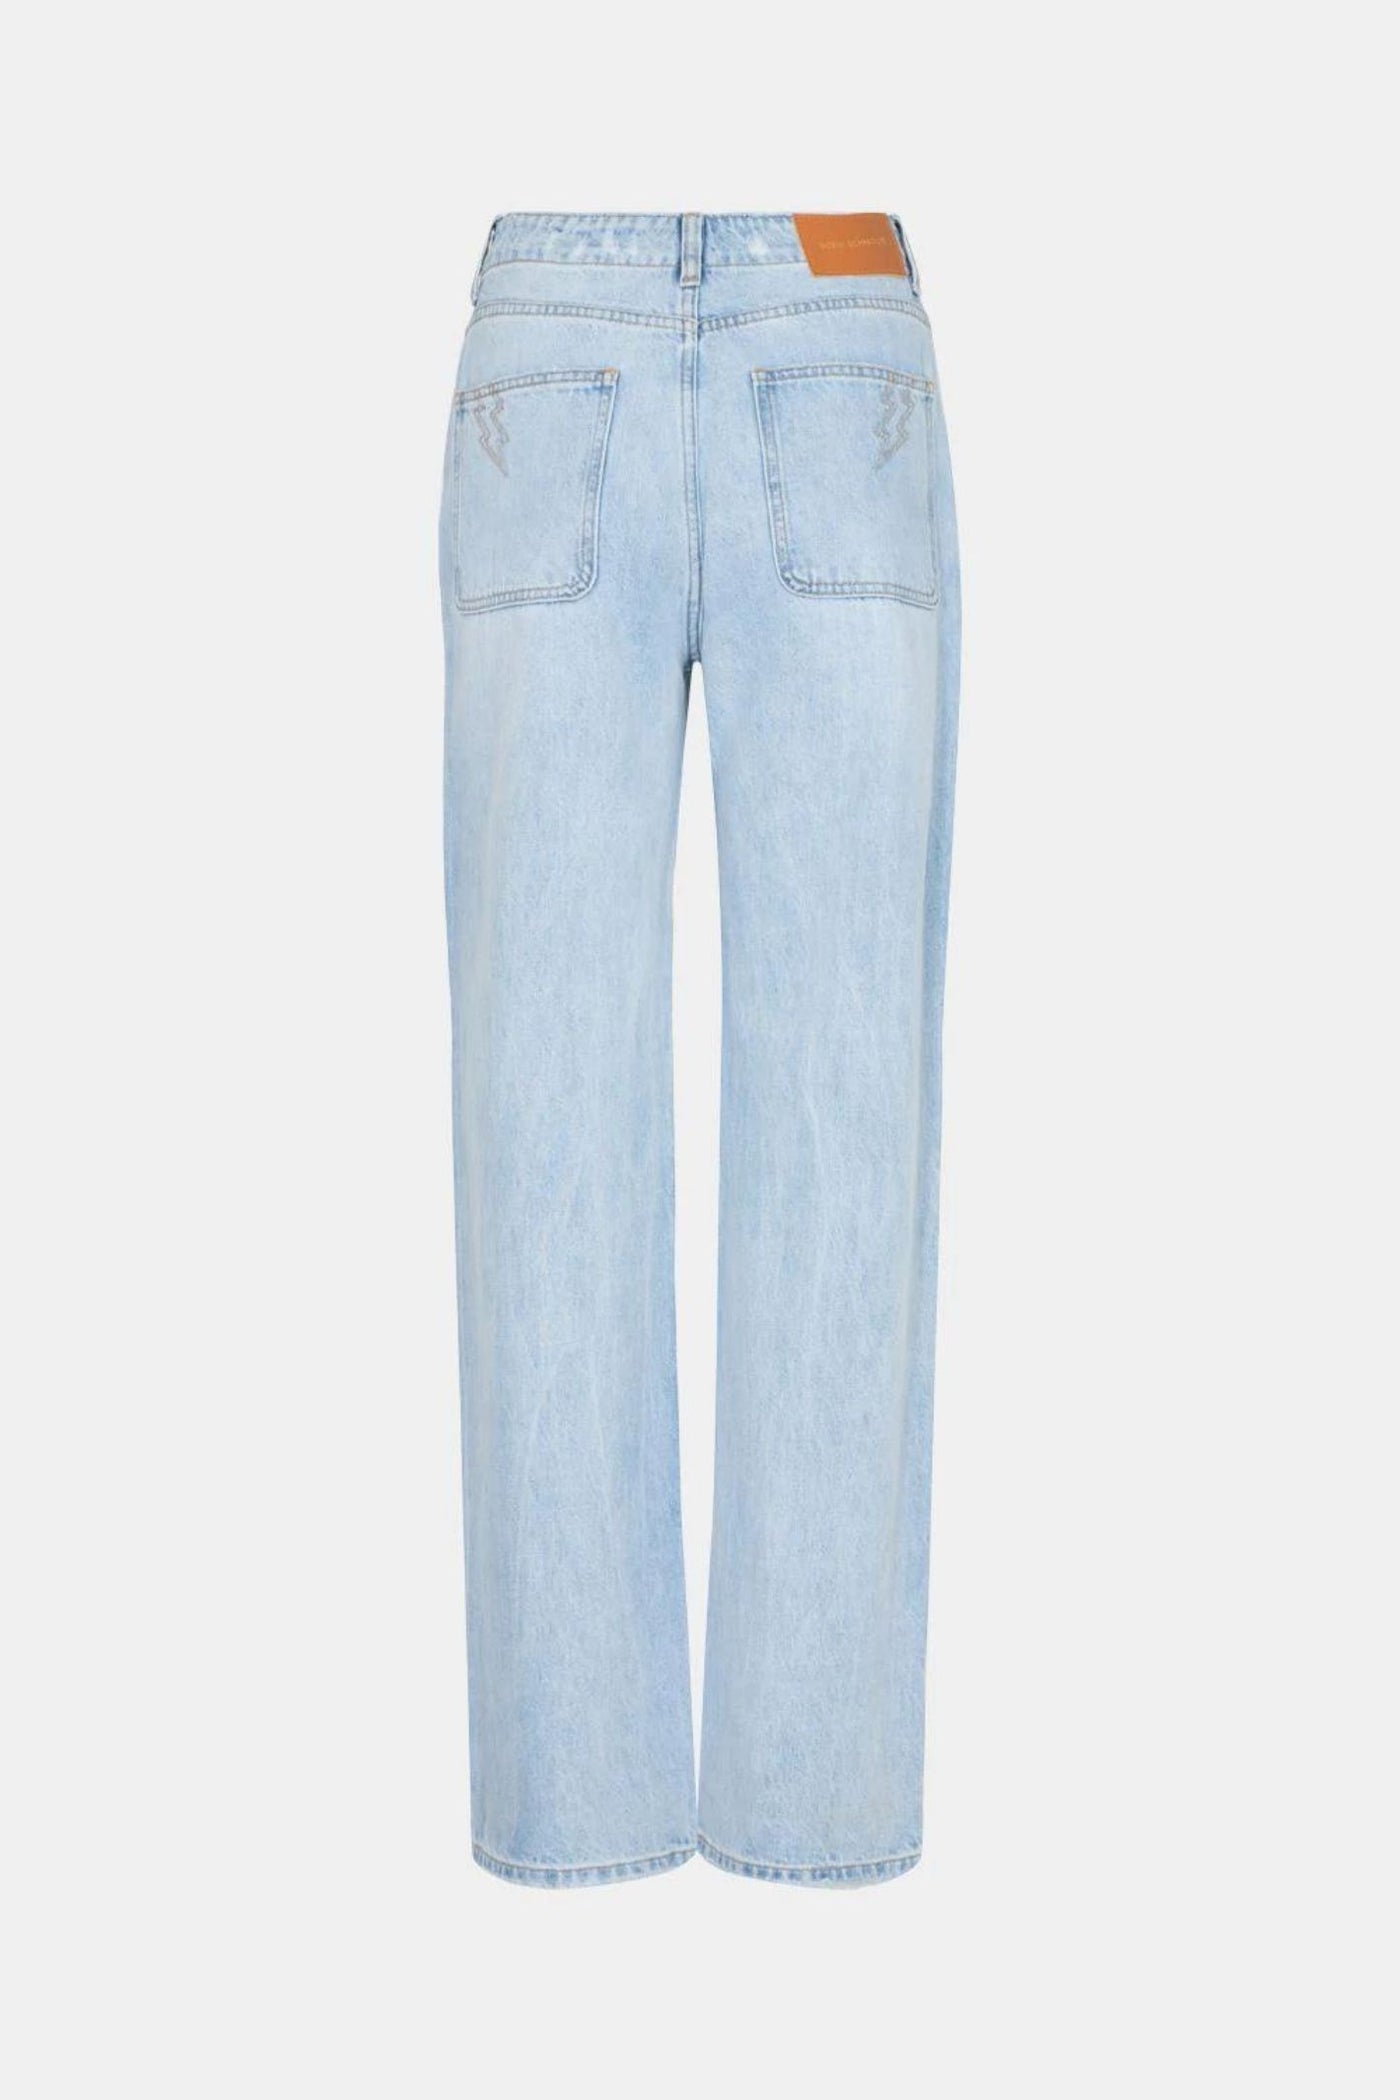 Sofie Schnoor 90's Jeans | Jezabel Boutique